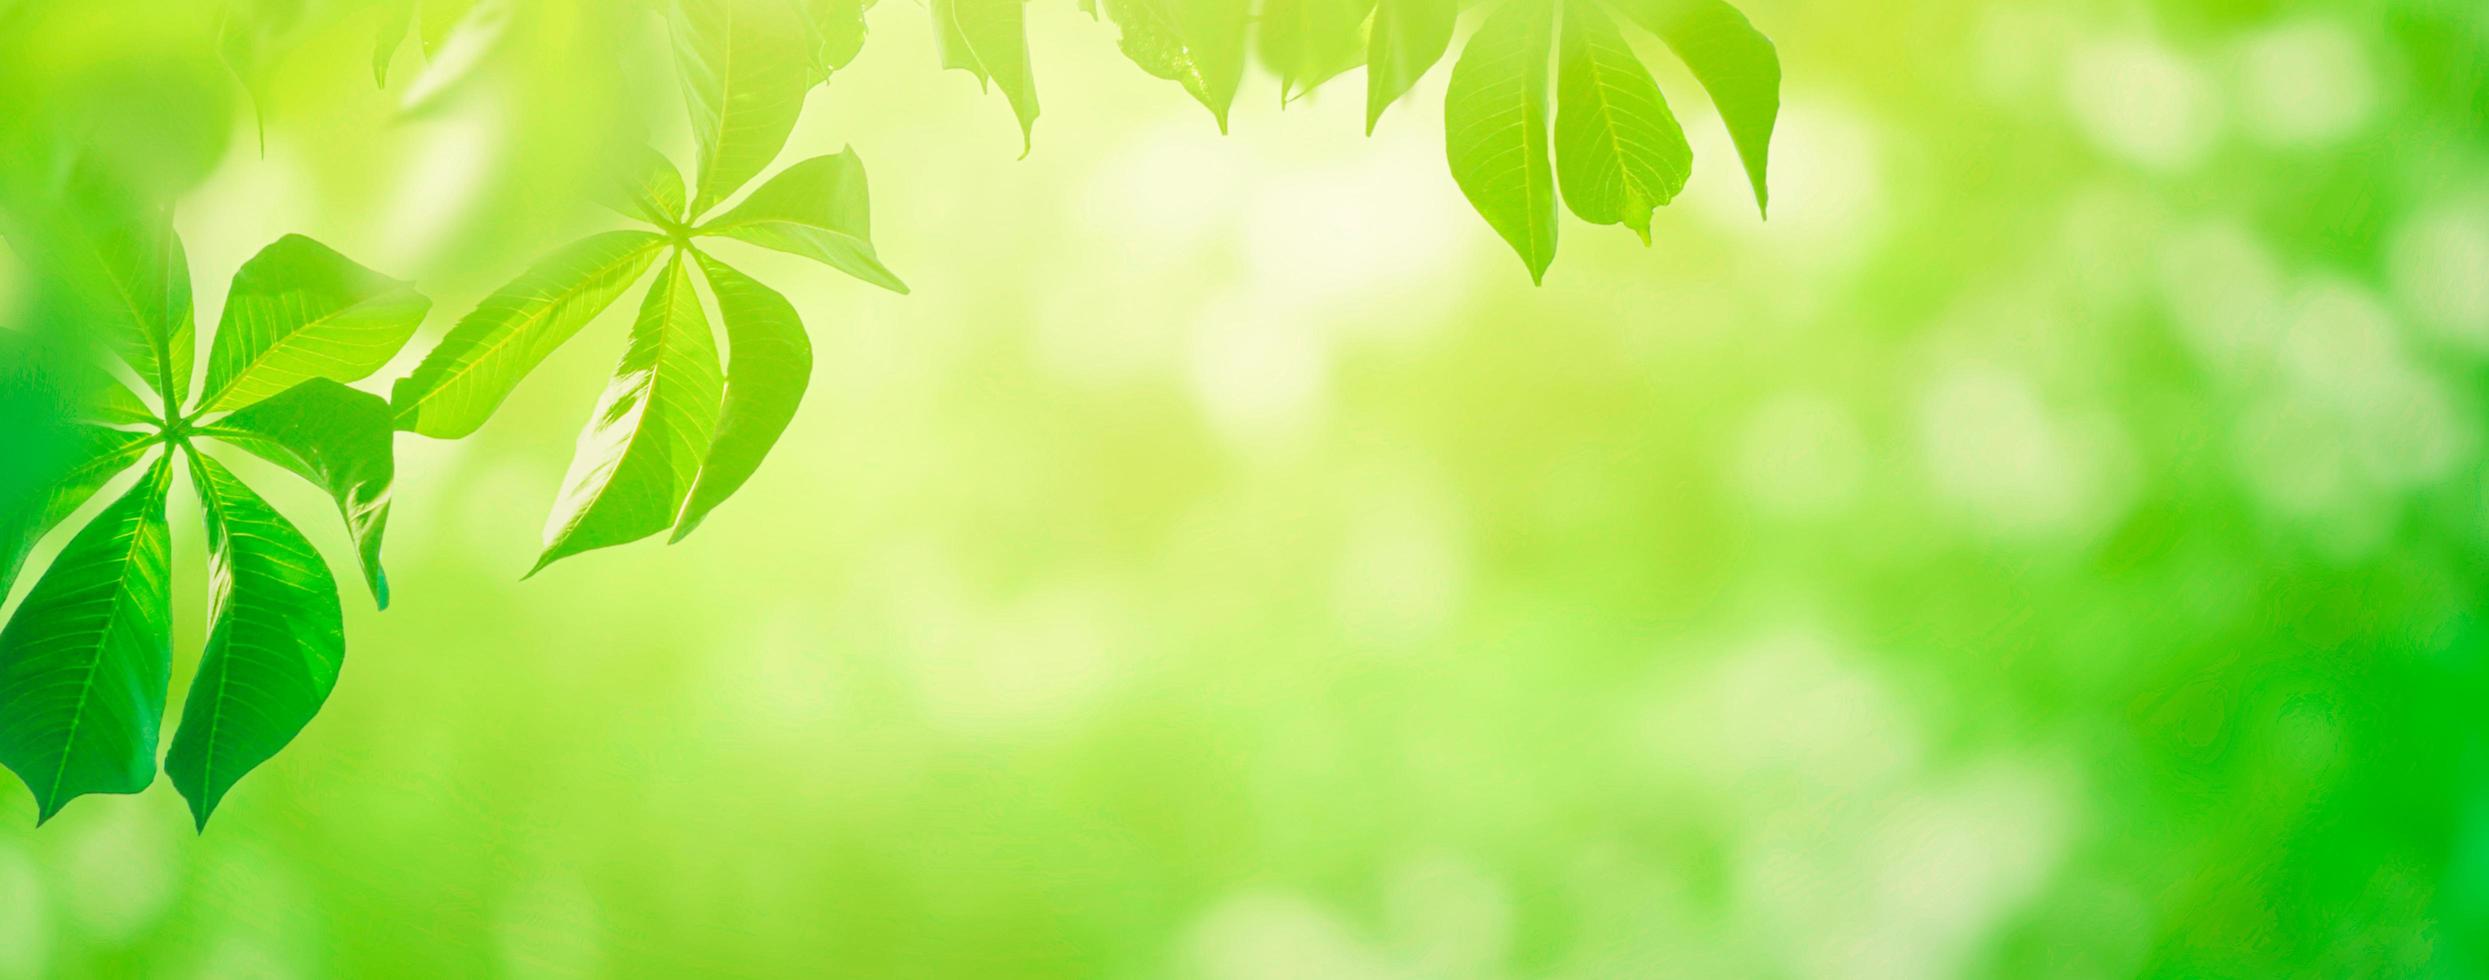 Nahaufnahme schöner Panoramablick auf grüne Blätter der Natur auf verschwommenem Grünhintergrund mit Sonnenlicht foto